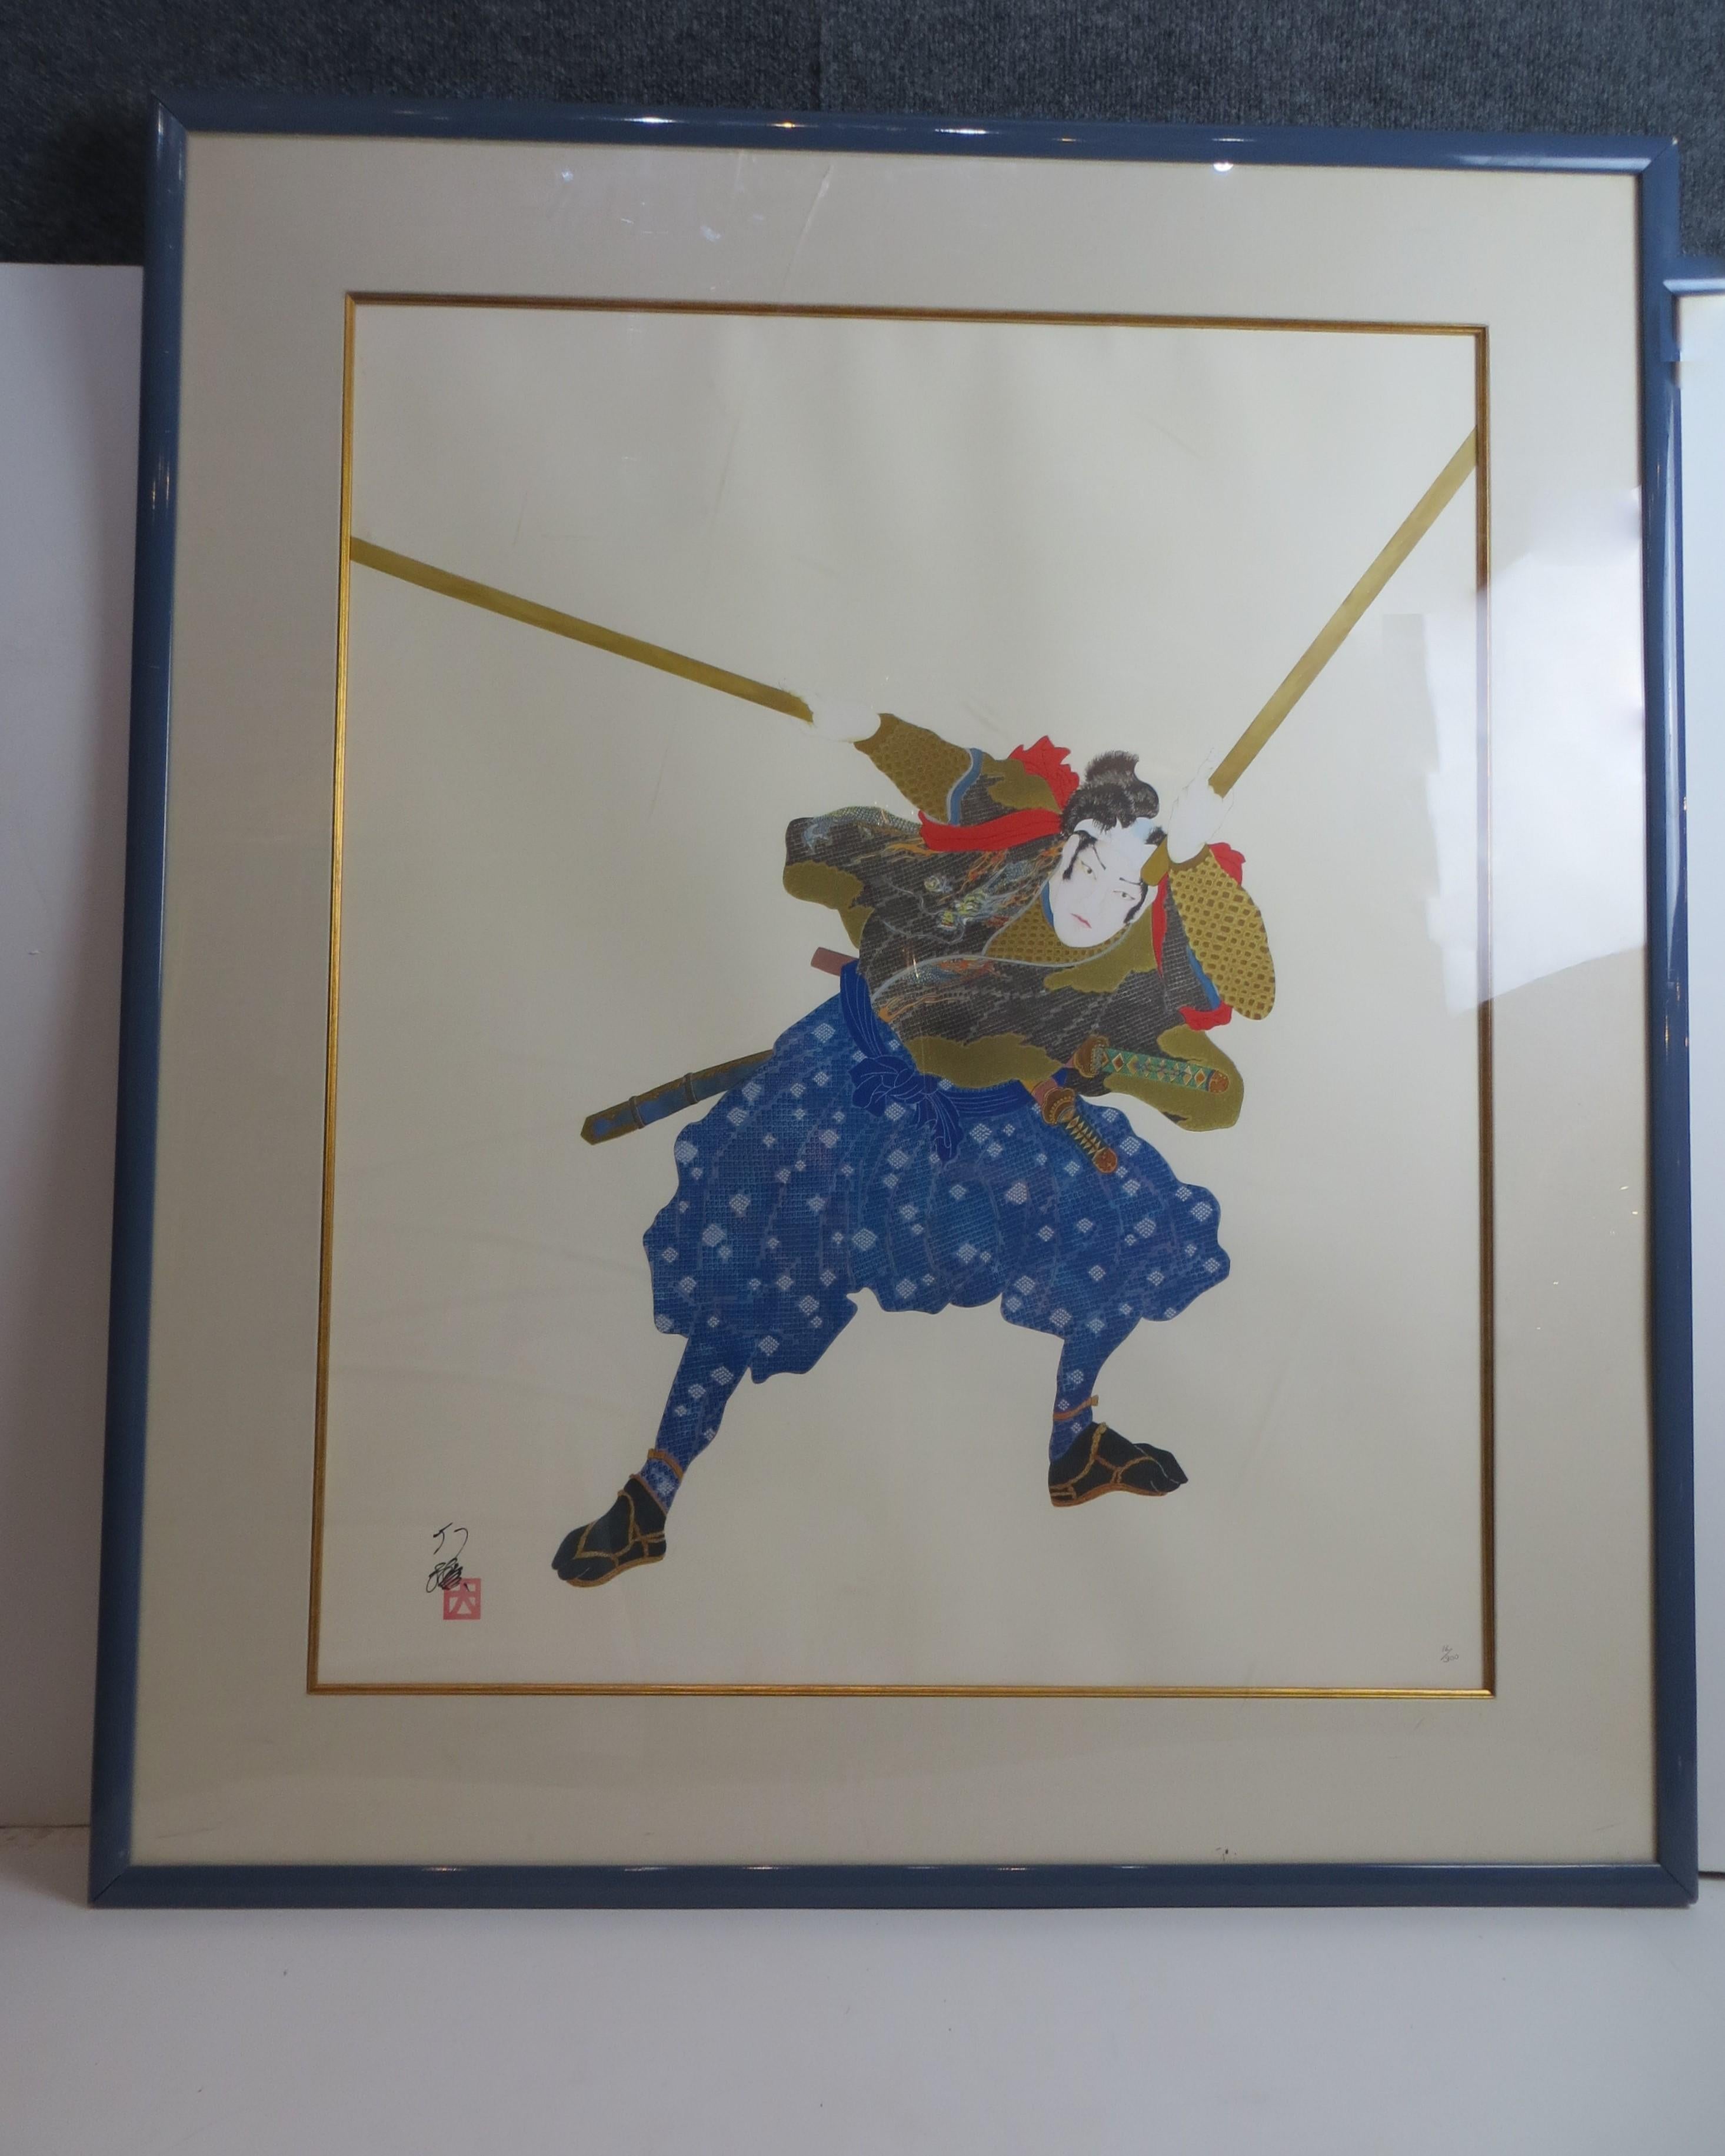 Hisashi Otsuka Spirit of Musashi Plate Signed Numbered Framed Japanese Print 1